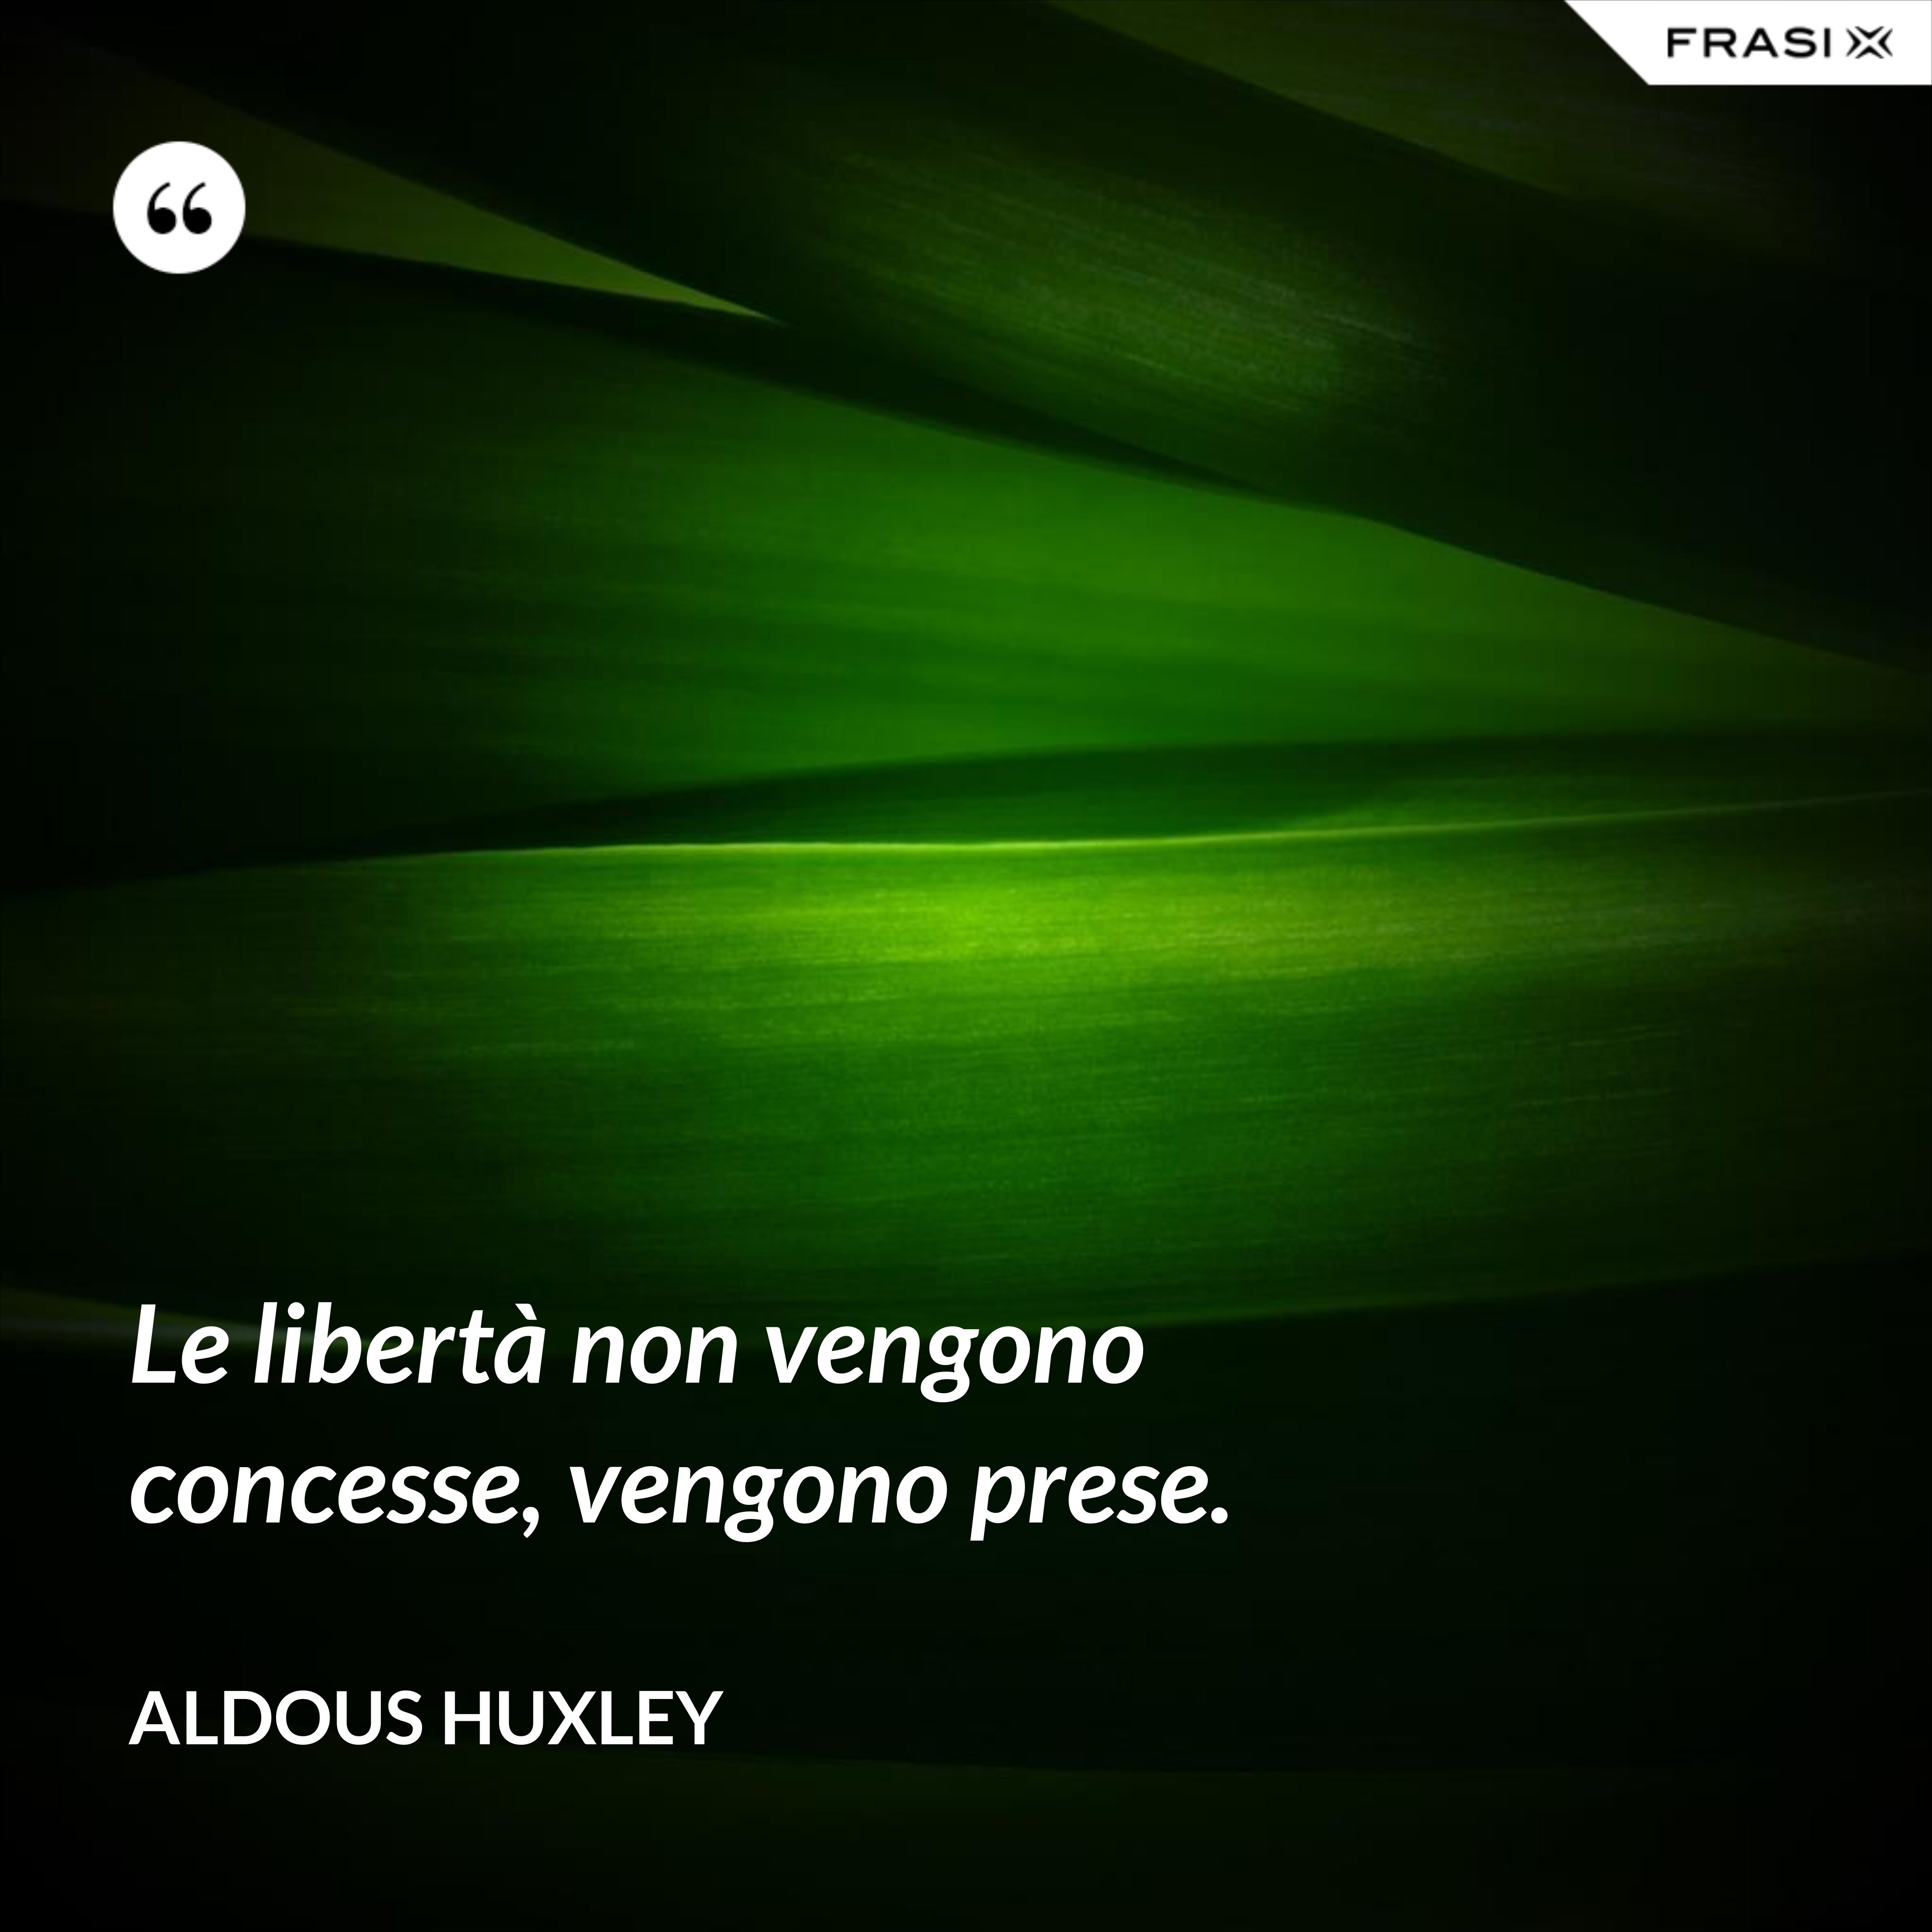 Le libertà non vengono concesse, vengono prese. - Aldous Huxley